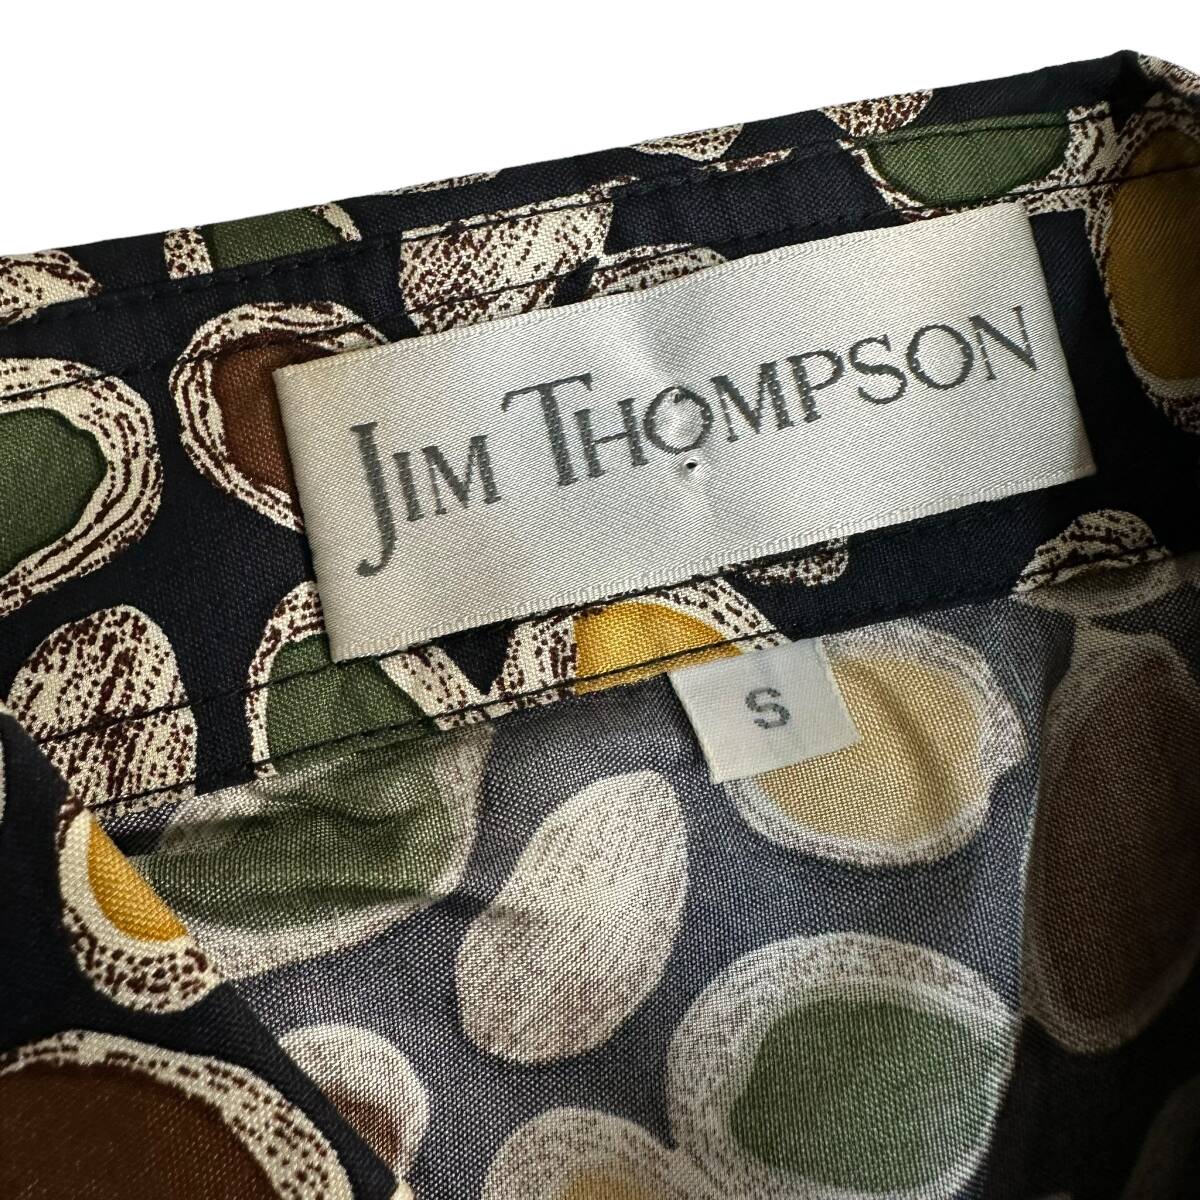 極美品 貴重【JIM THOMPSON】ジムトンプソン シルク100% 半袖シャツ 総柄 VINTAGE 海外古着 アートデザイン_画像7